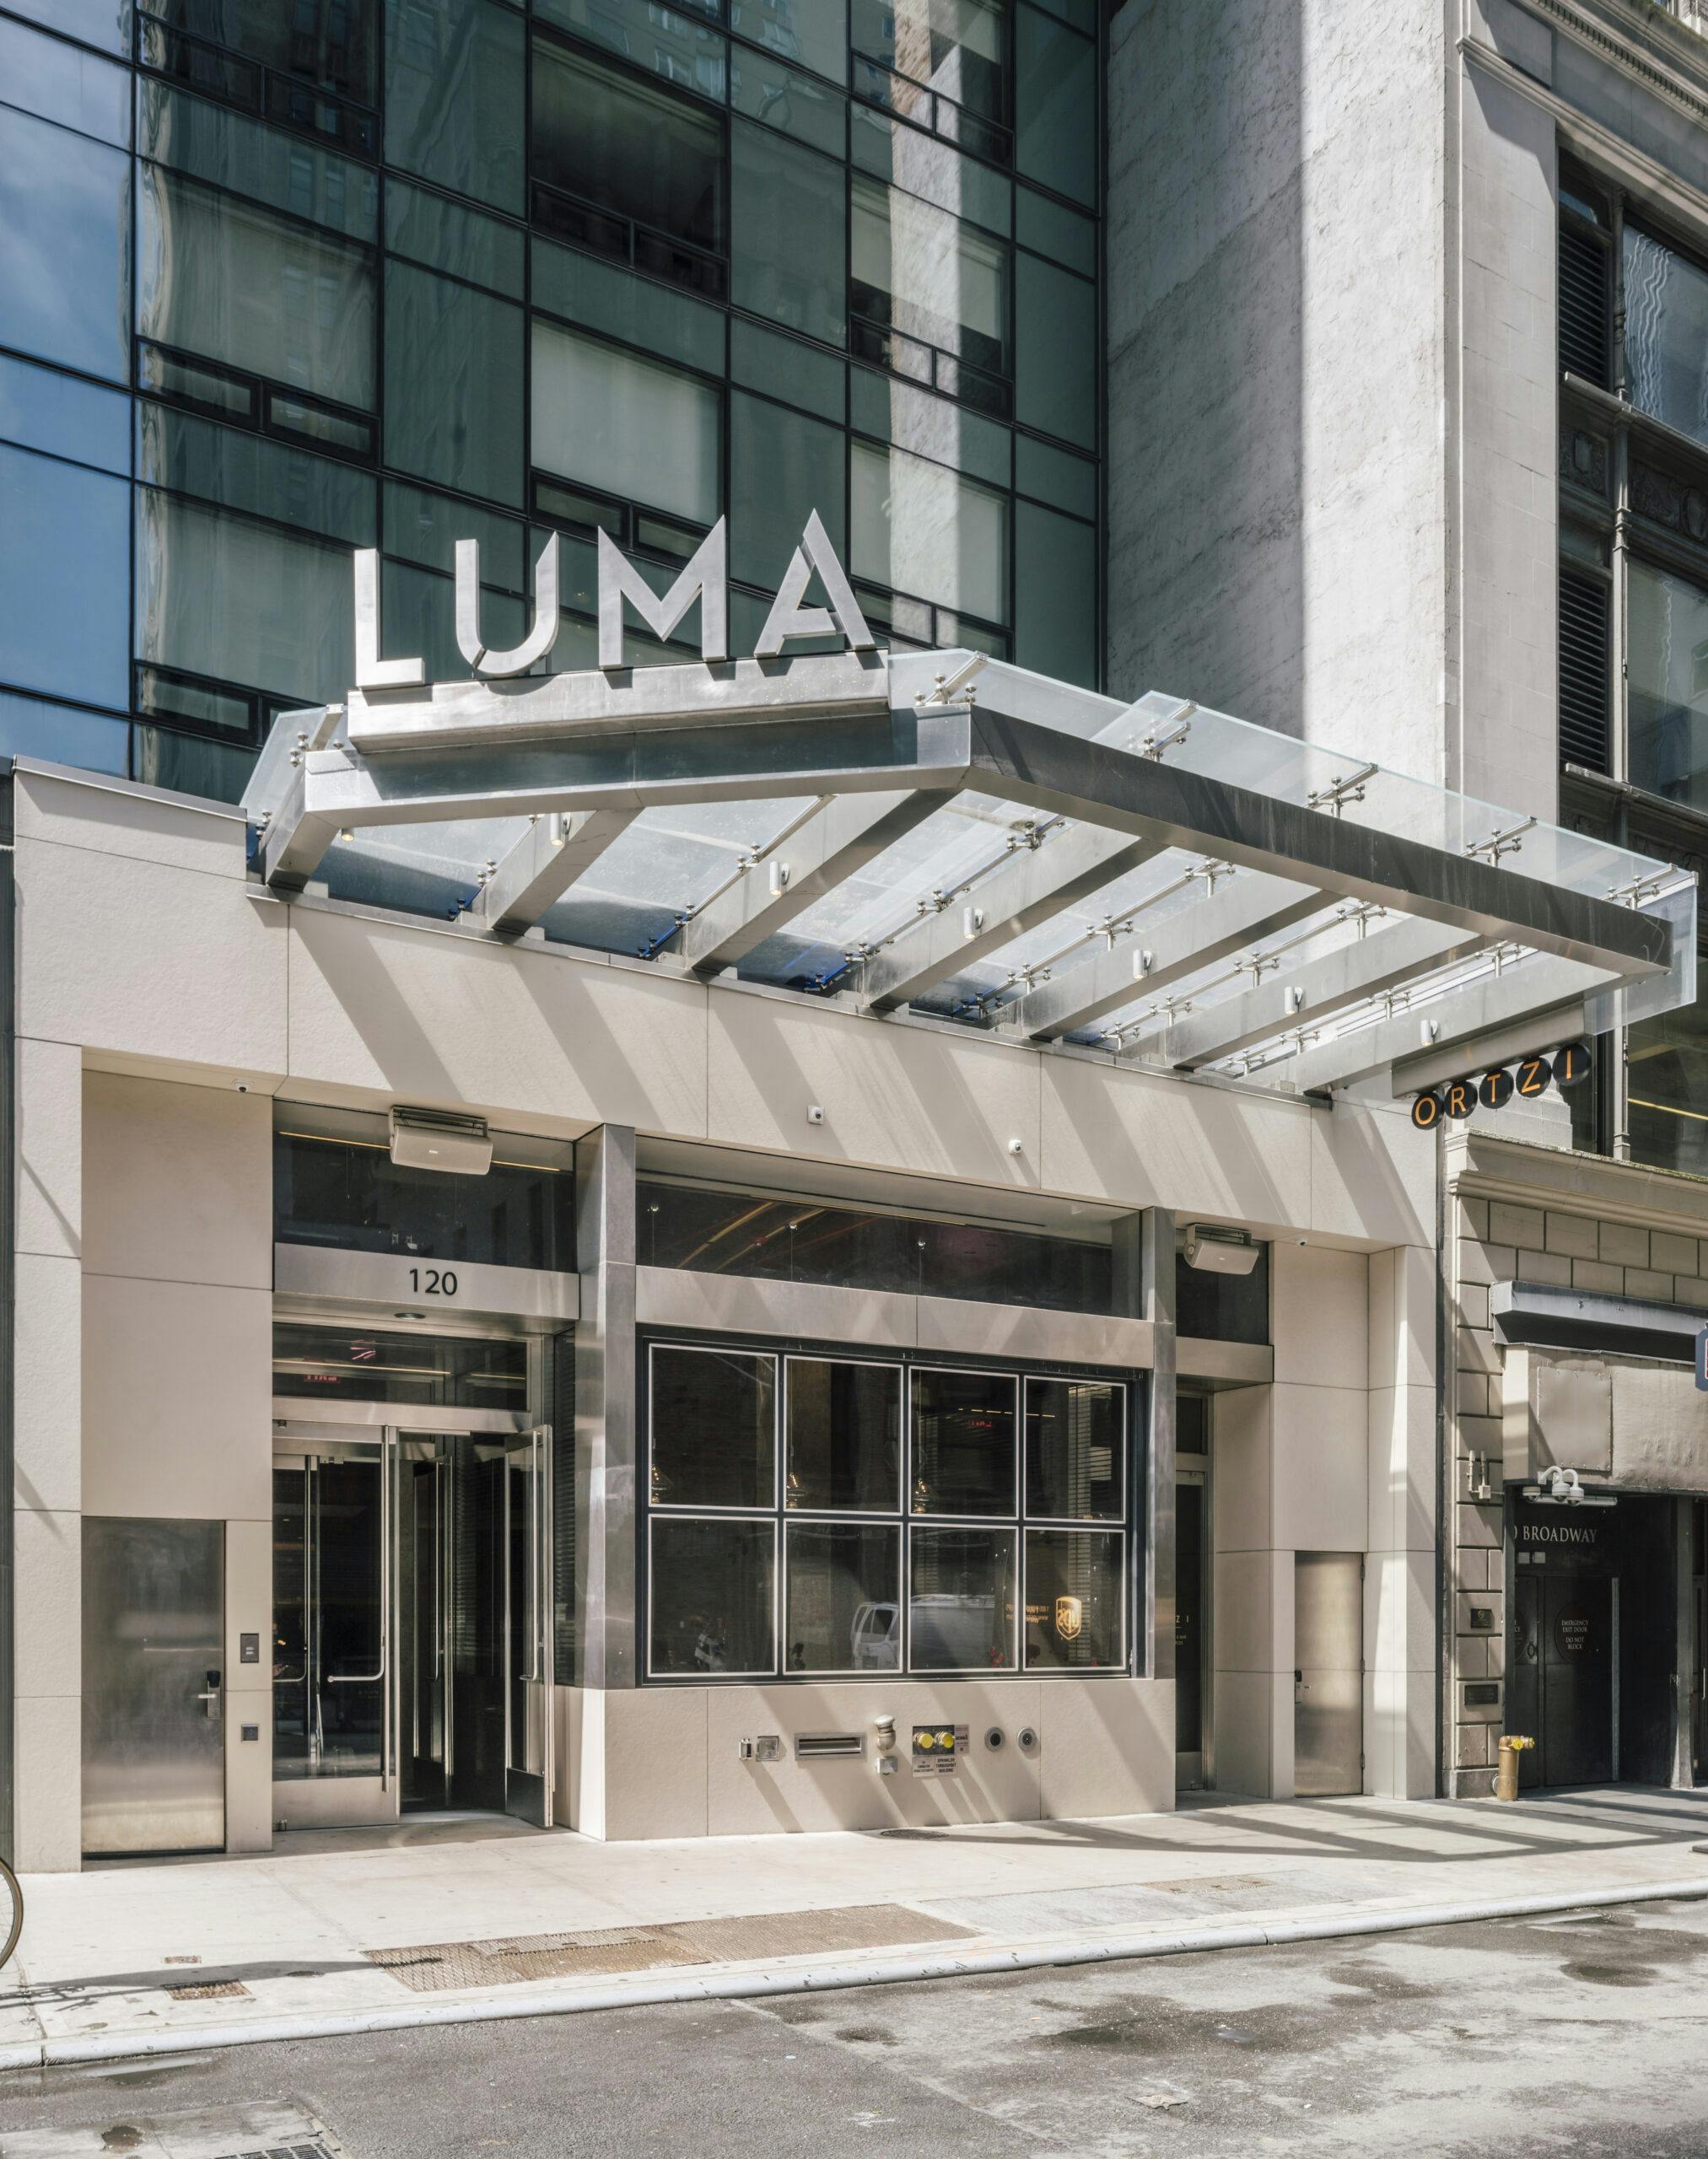 Luma Hotel Times Square showcases Dekton by Cosentino